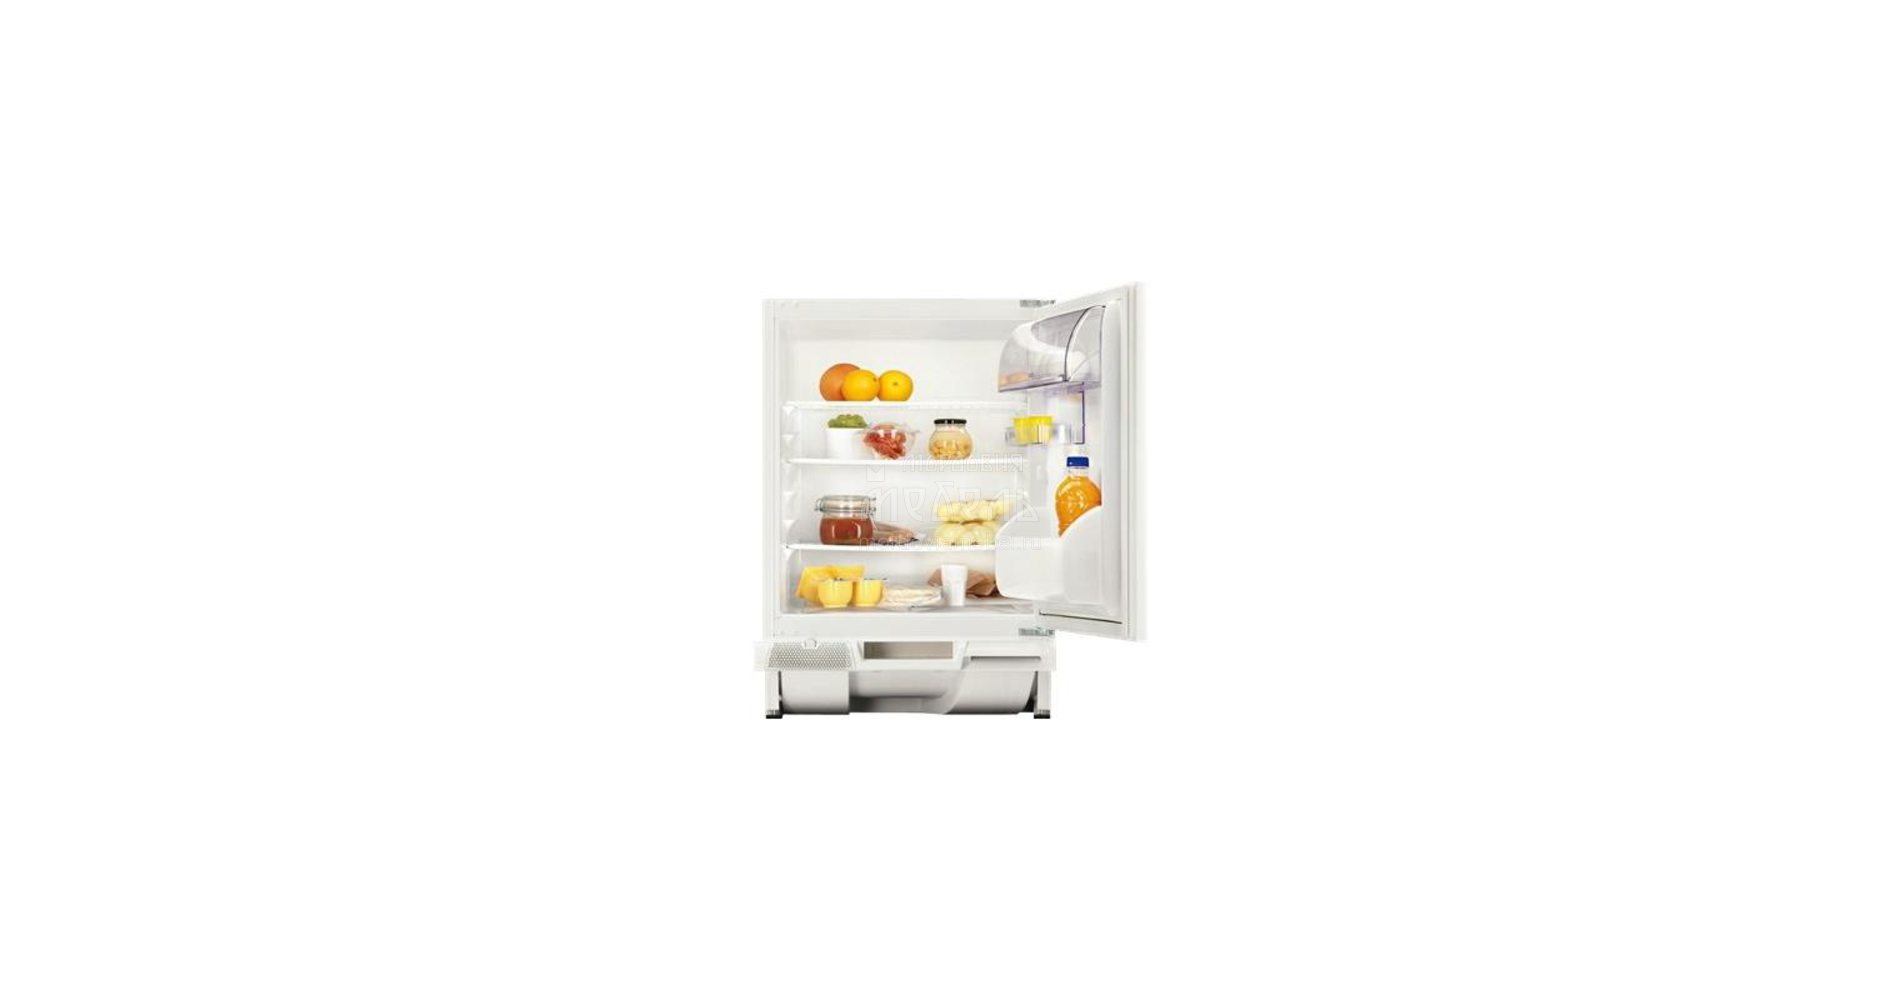 Встраиваемый холодильник Zanussi Zua 14020 sa